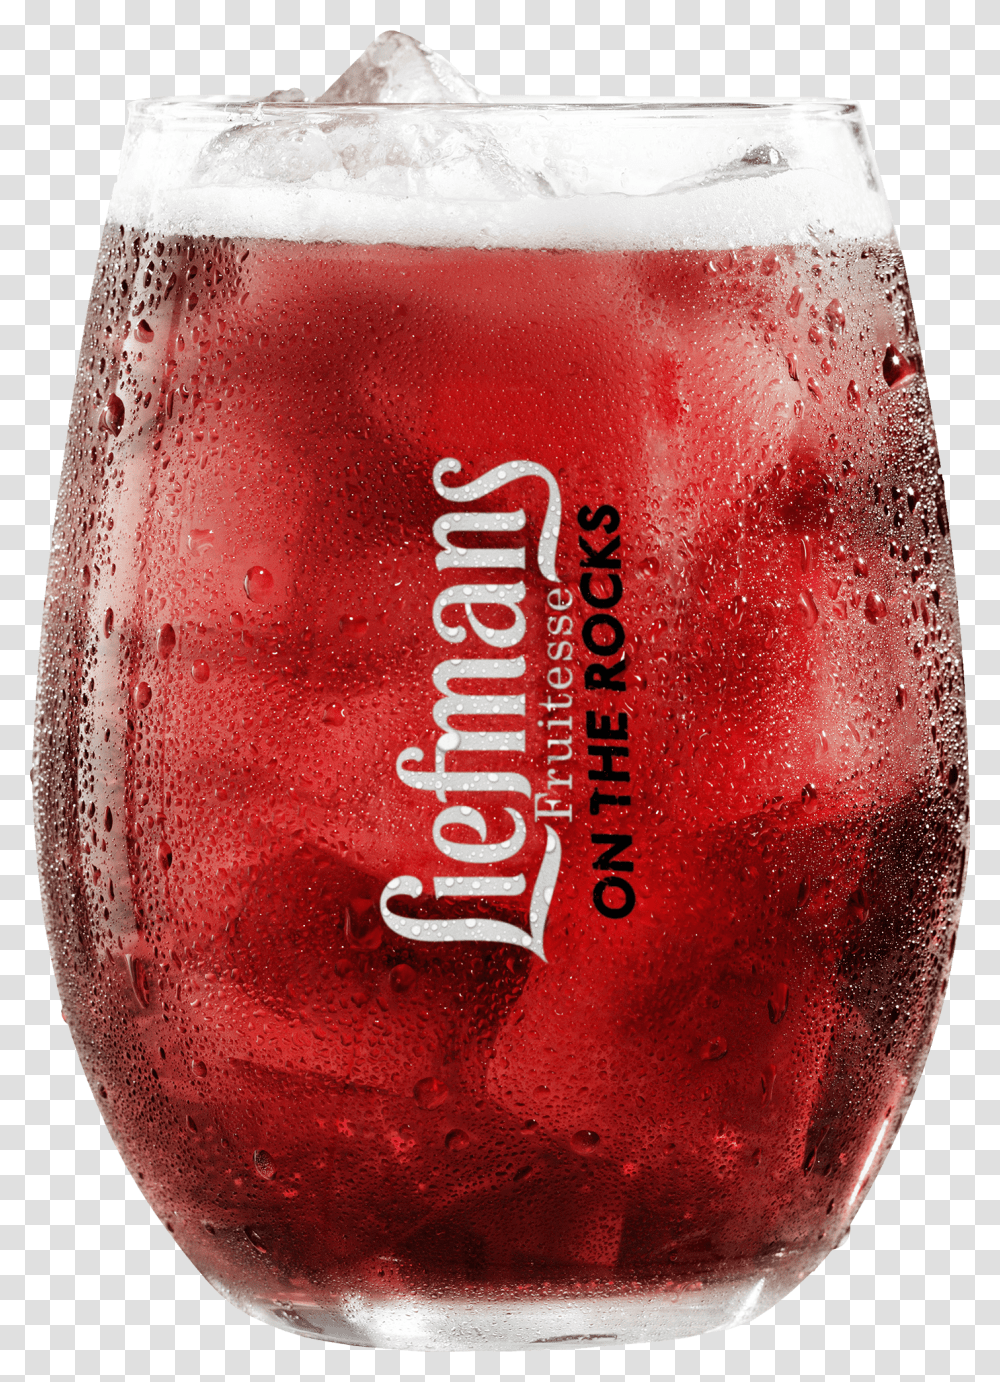 Liefmans On The Rocks Glass Clip Arts Liefmans Bier, Soda, Beverage, Drink, Ketchup Transparent Png